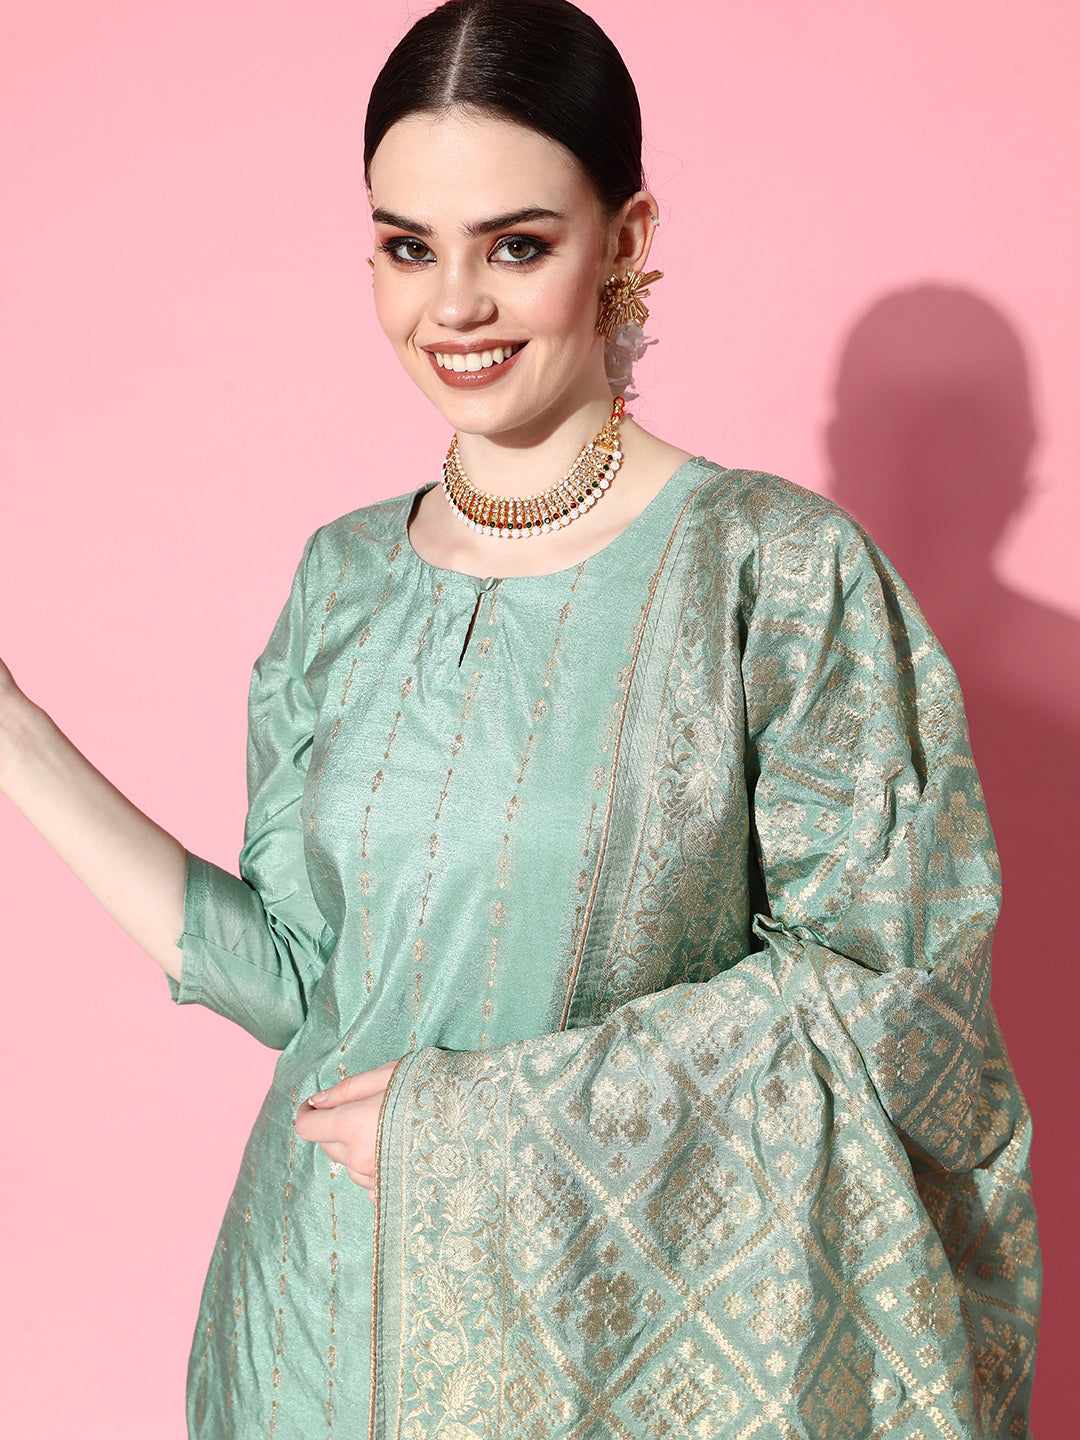 Ishin Women's Brocade Green Woven Design A-Line Kurta Trouser Dupatta Set